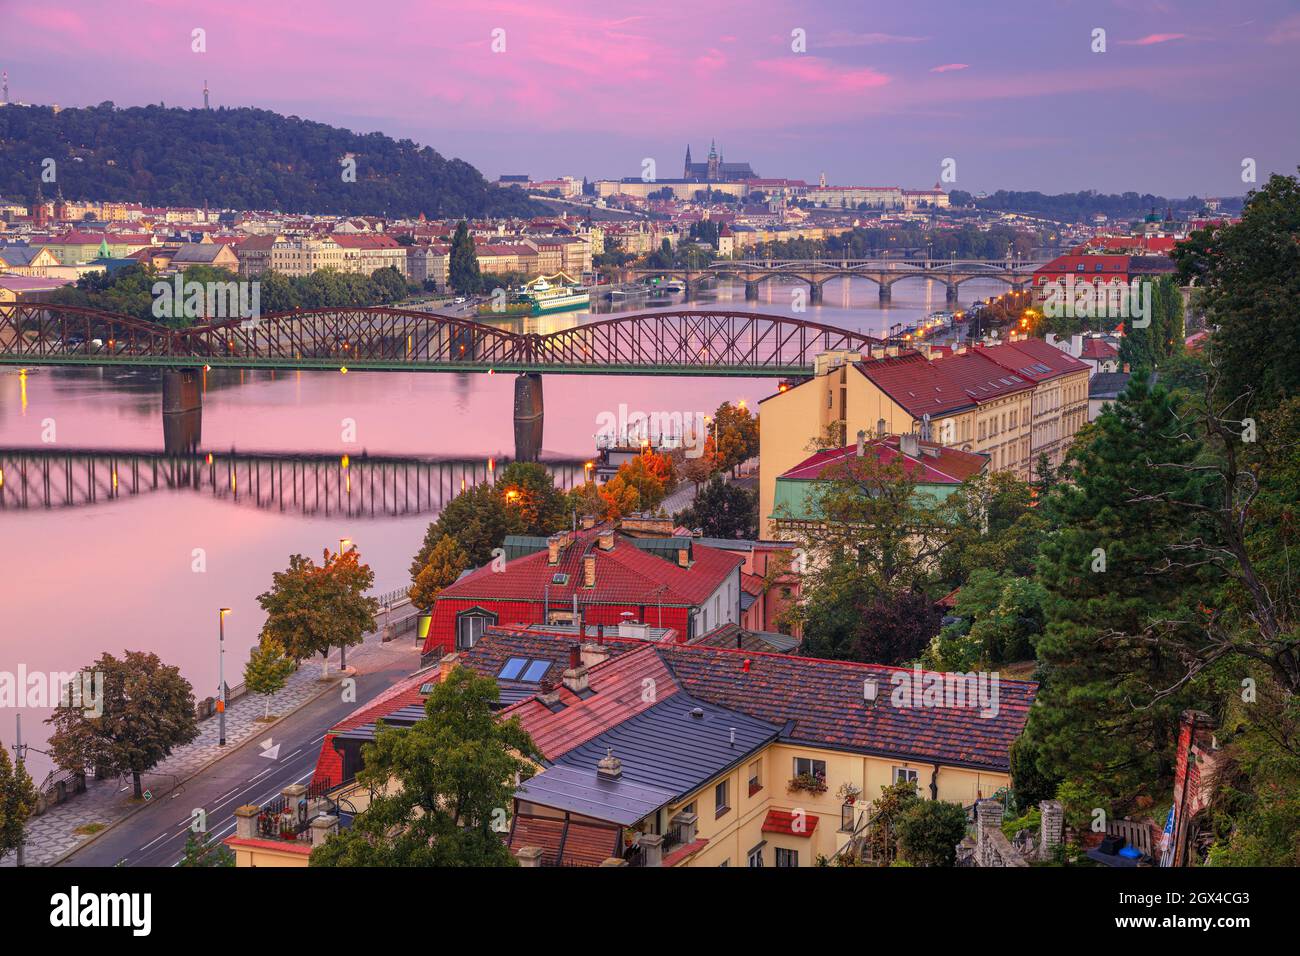 Prag bei Sonnenaufgang. Stadtbild von Prag, Hauptstadt der Tschechischen Republik mit Veitsdom und fünf Brücken über die Moldau bei Sonnenaufgang. Stockfoto